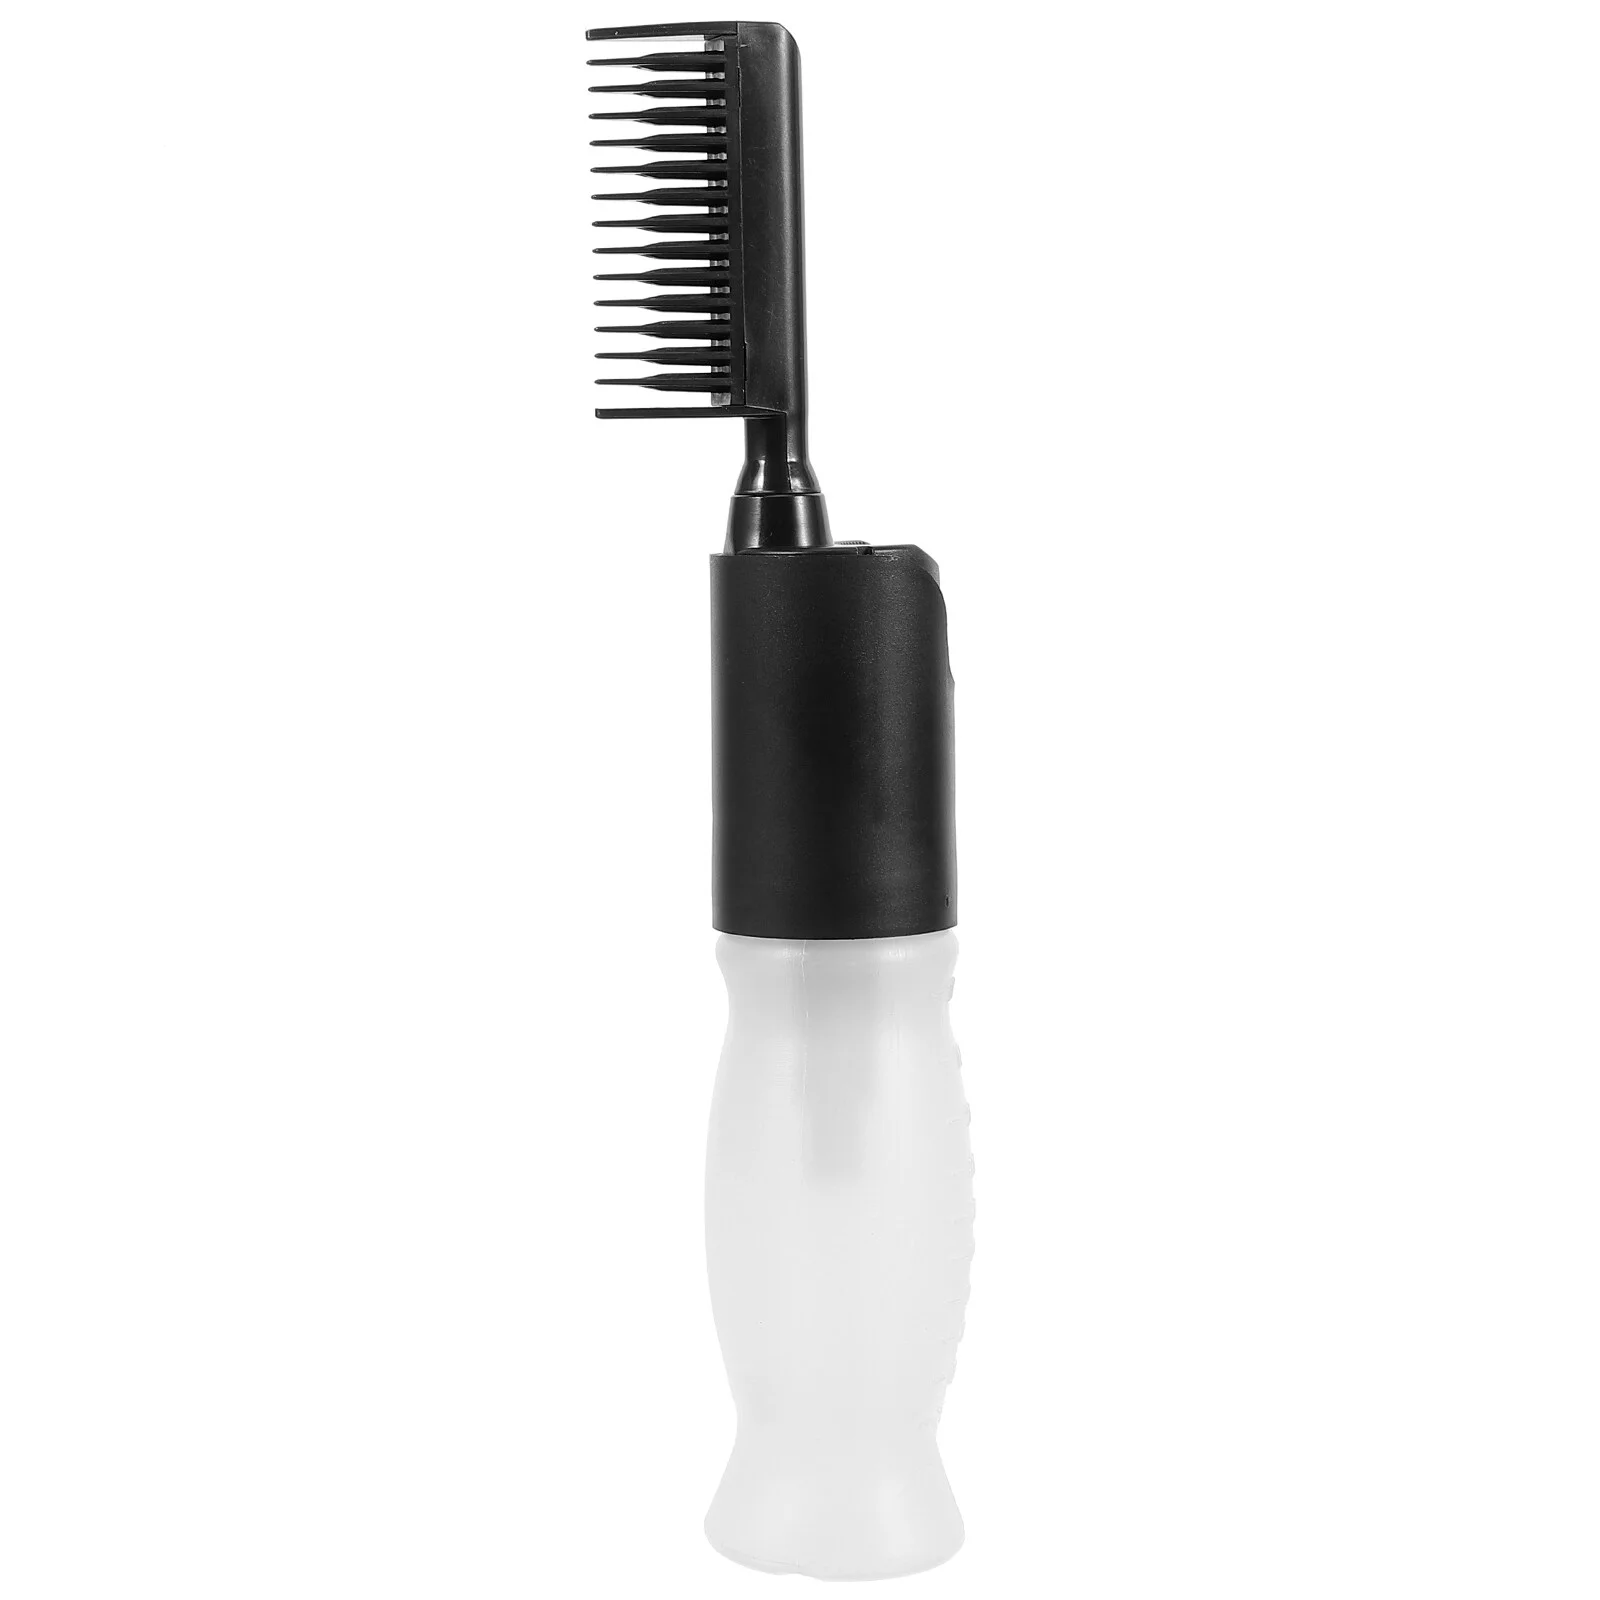 

Hair Dye Bottle Root Comb Bottles Coloring Brush Applicator Salon Oil Scalp Dispensing Beard Mustache